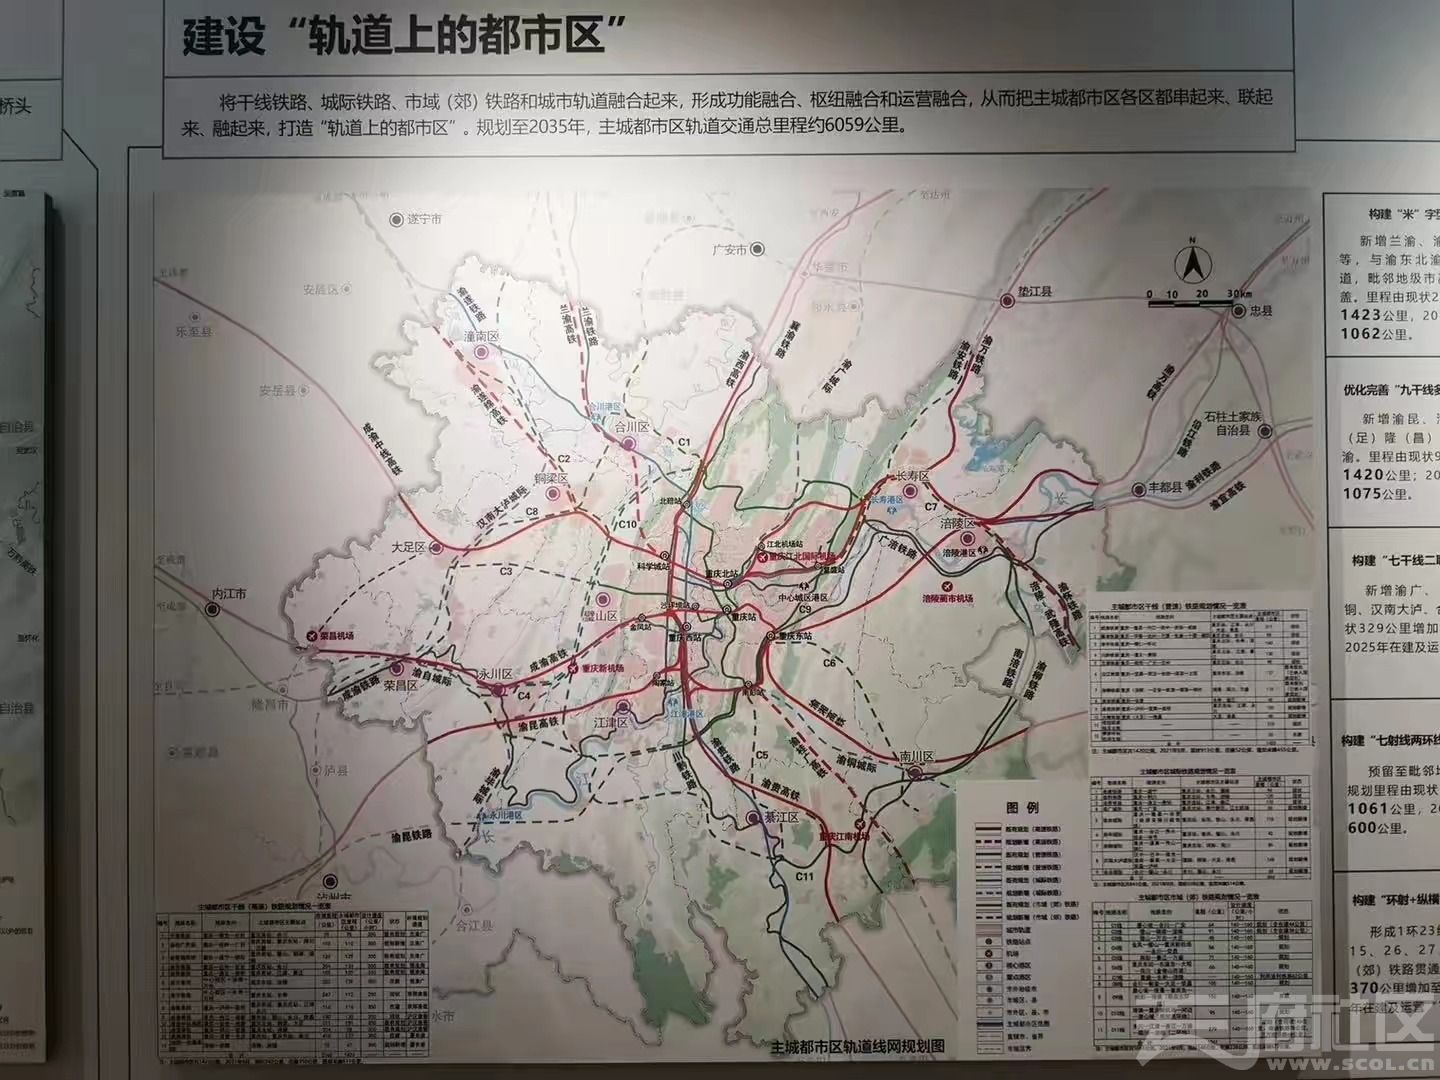 兰渝高铁新路线这个图很清晰,走合川铜梁到遂宁去了,兰渝高铁